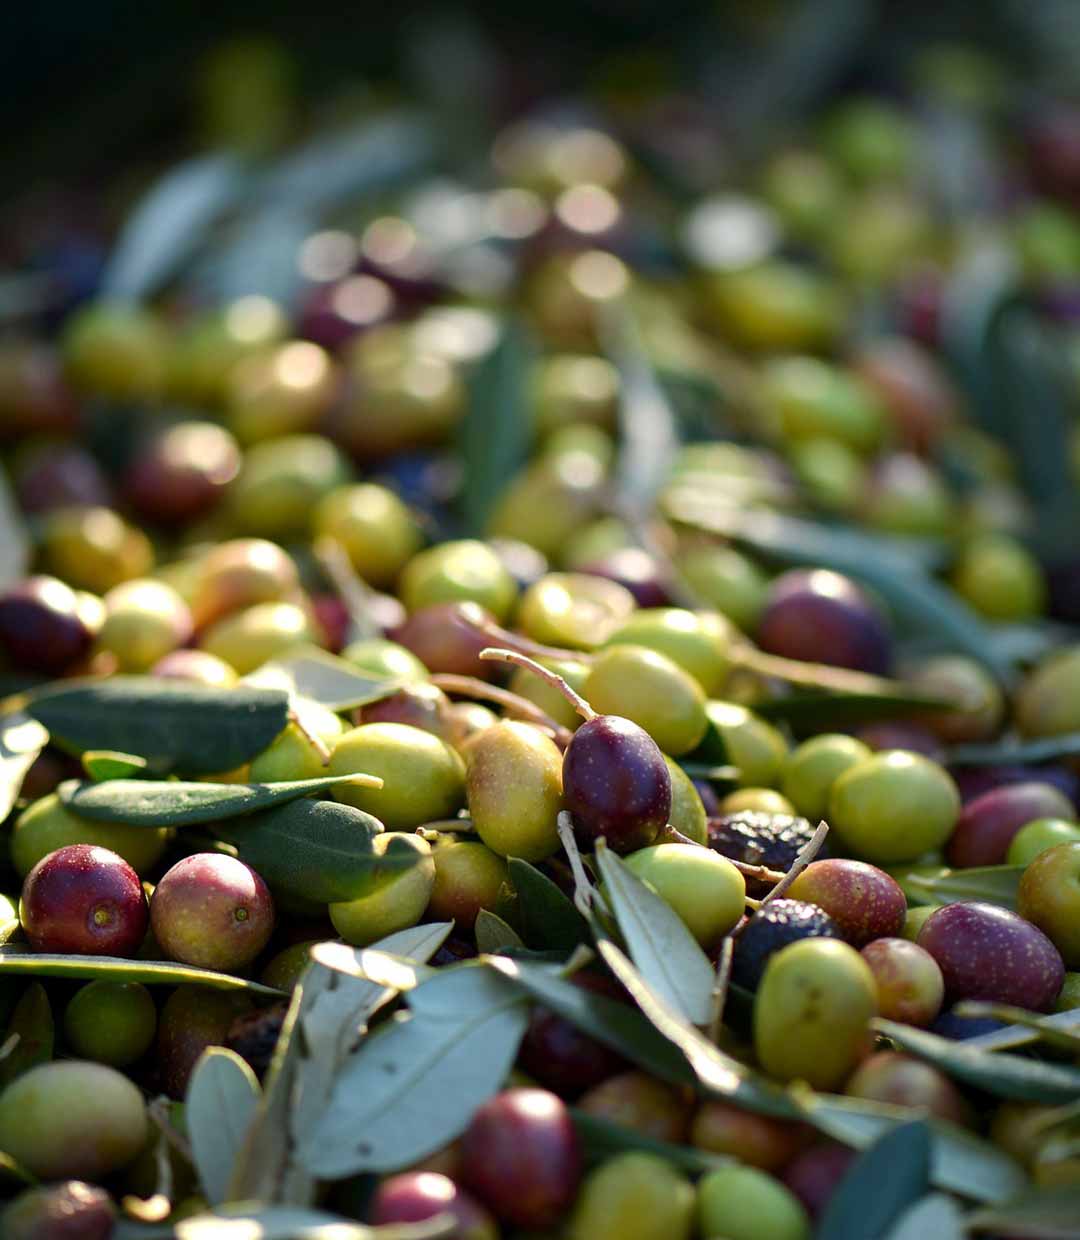 Die Polyphenol-starke Coratina Olive spielt die Hauptrolle in unserem Olivenöl